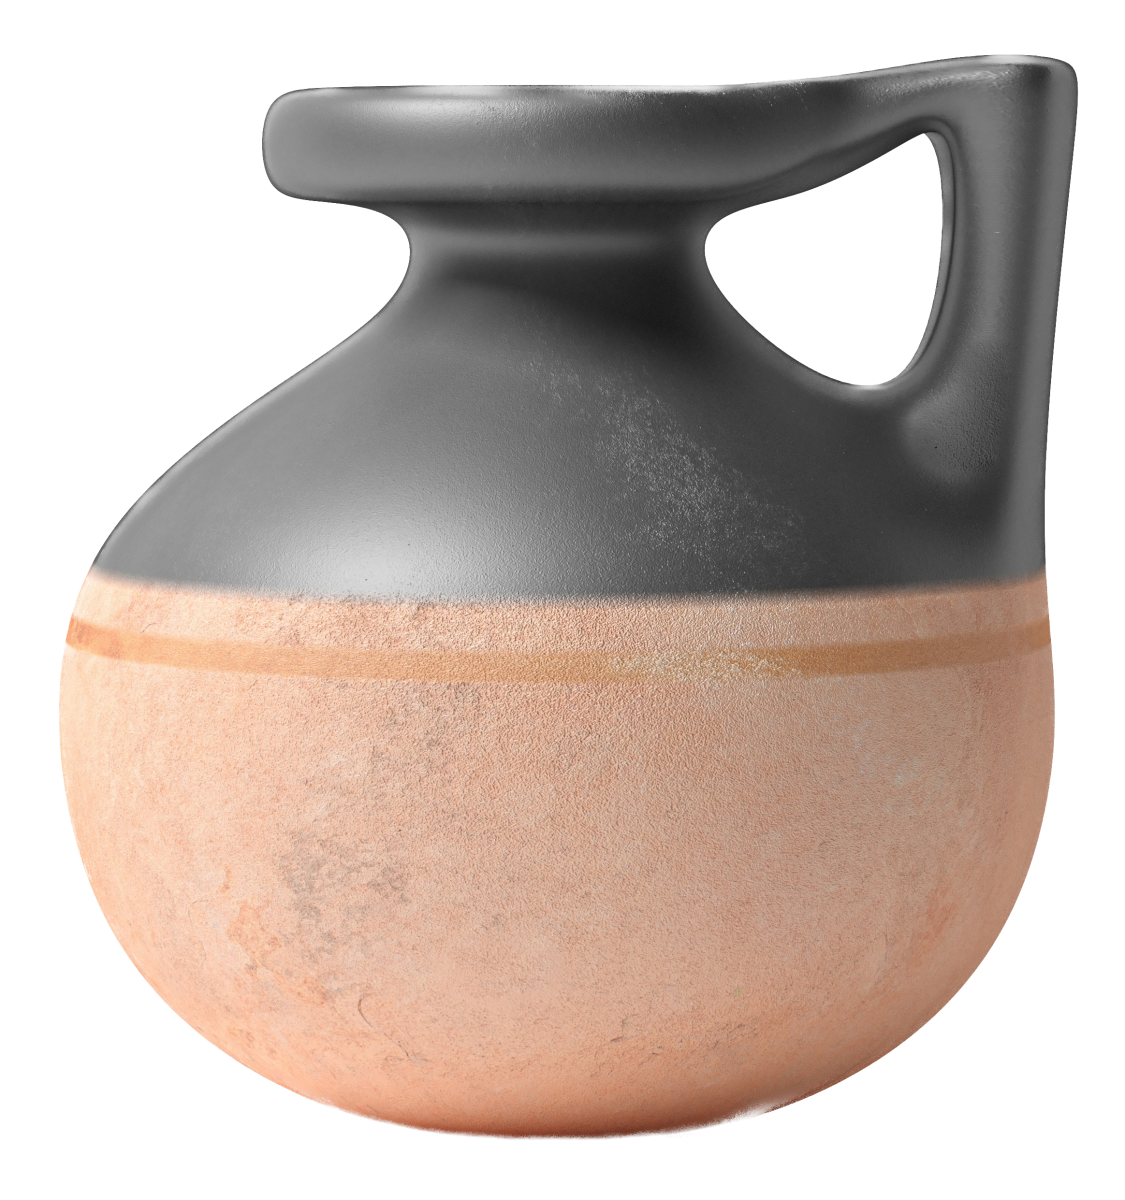 Piccolo vaso greco antico in ceramica con manico isolato